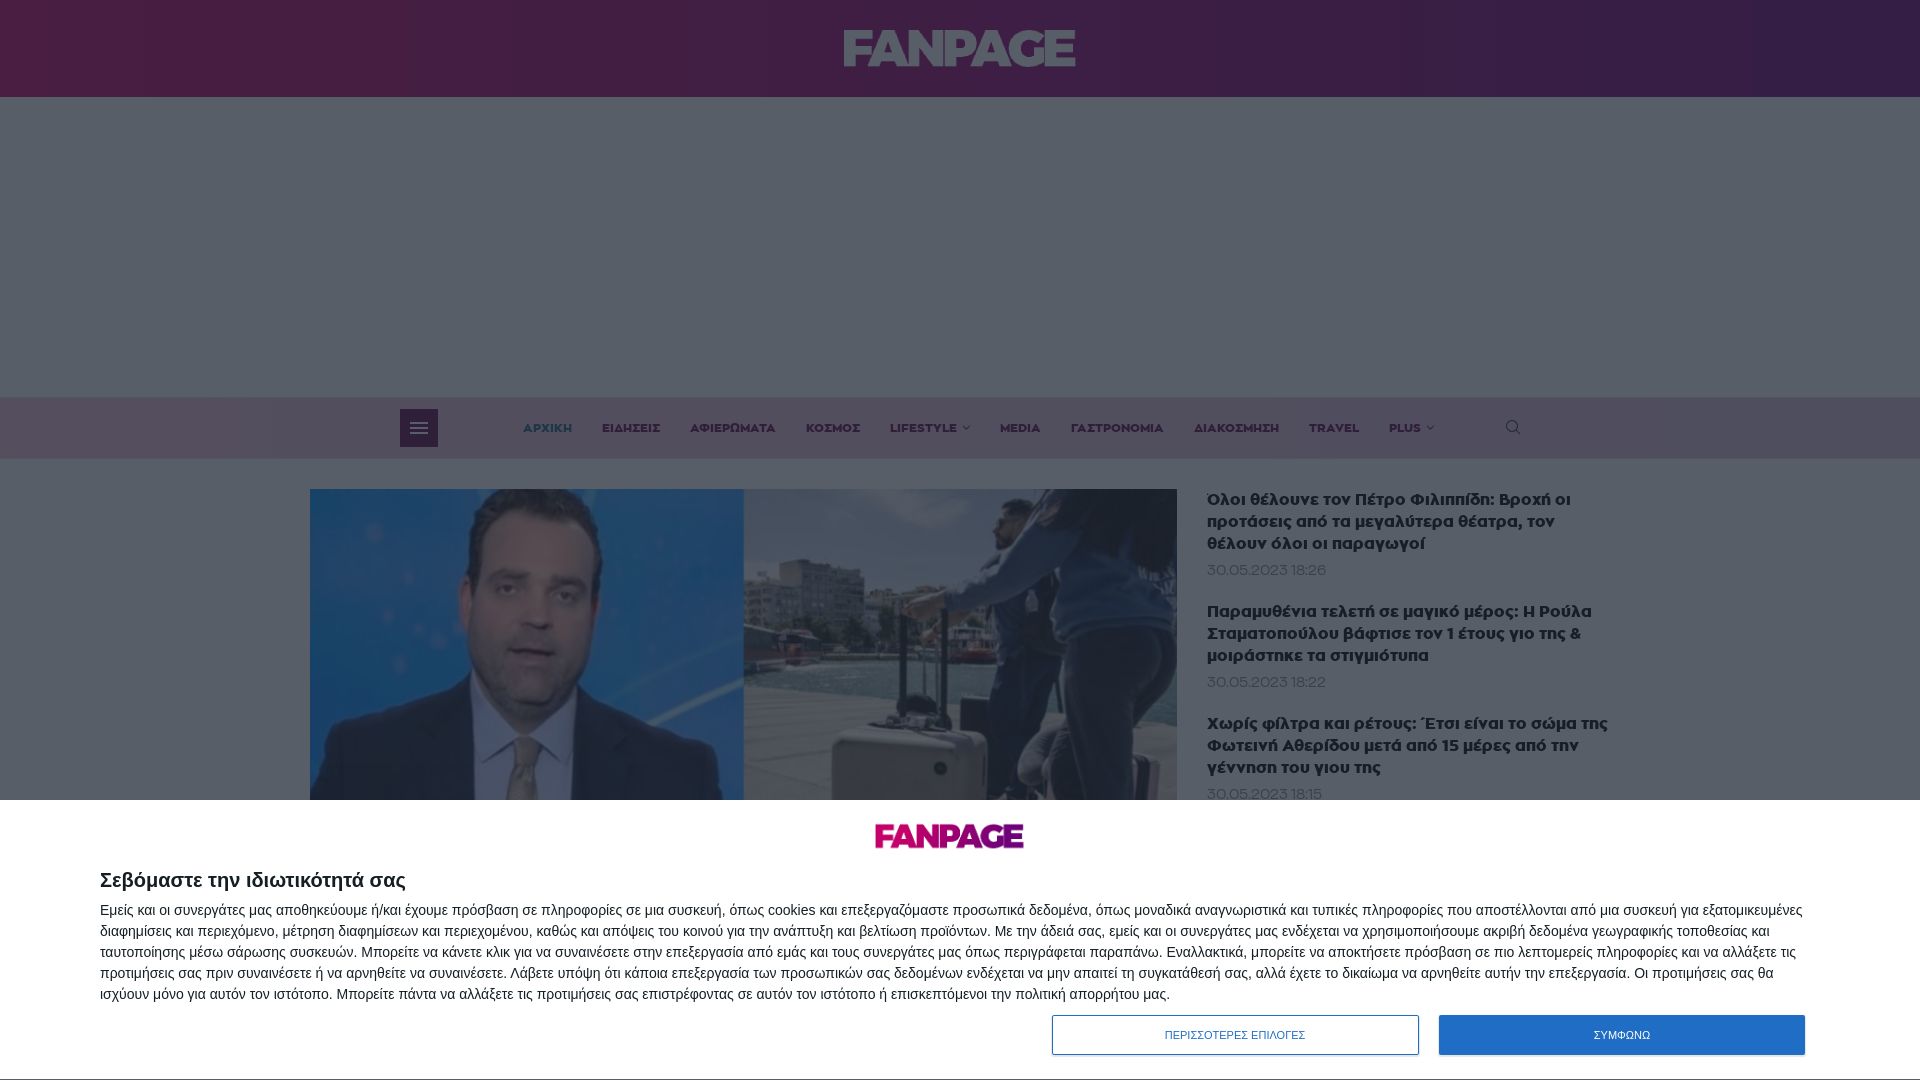 État du site web fanpage.gr est   EN LIGNE